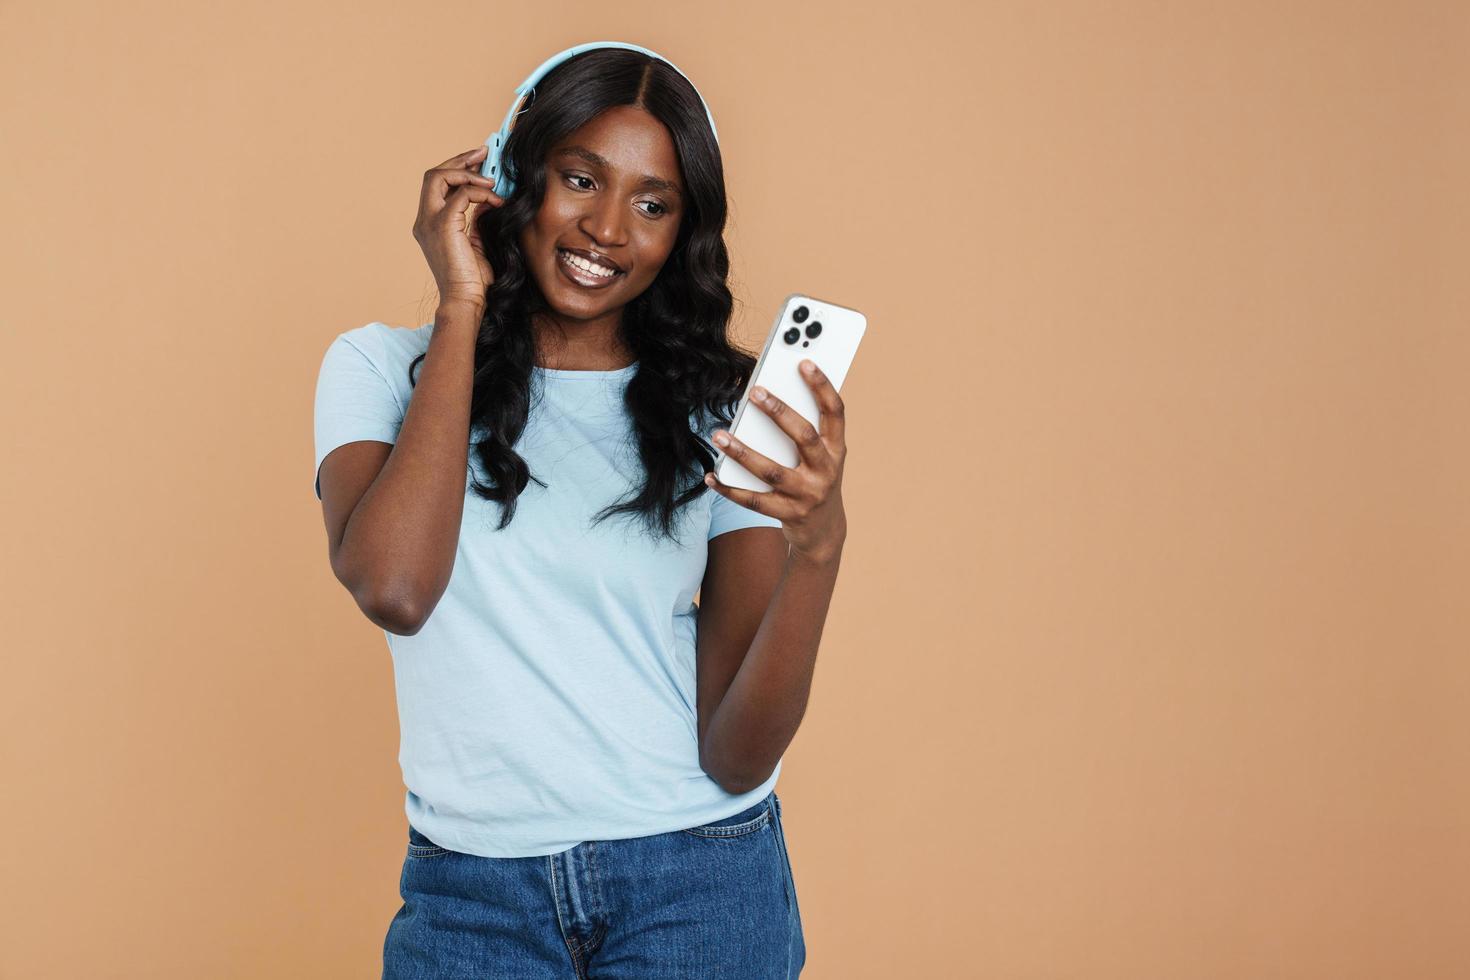 mujer africana sonriente enviando mensajes de texto por teléfono con auriculares foto